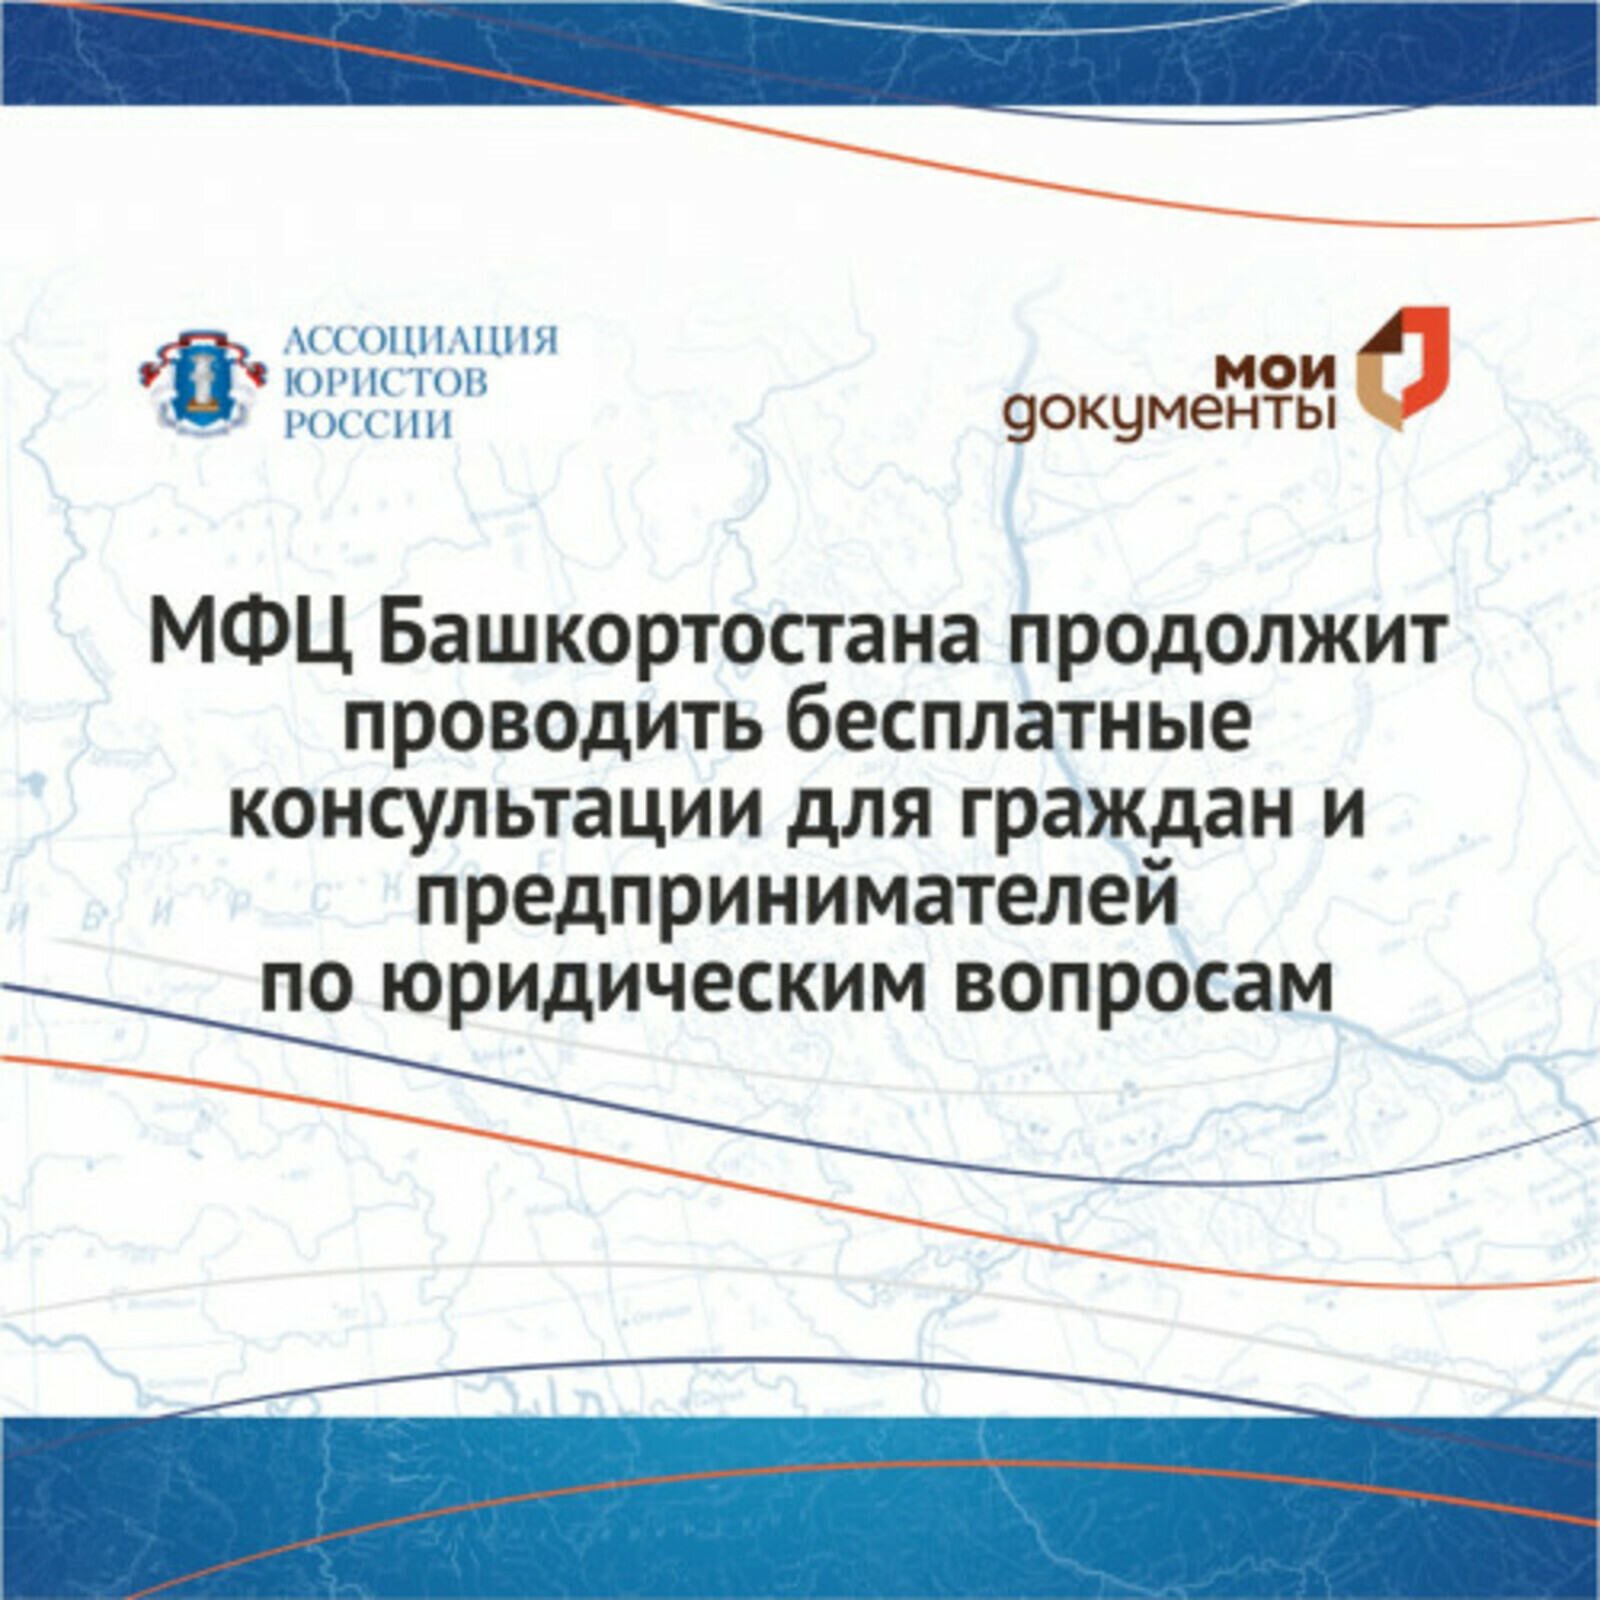 МФЦ Башкортостана продолжит проводить бесплатные консультации для граждан и предпринимателей по юридическим вопросам